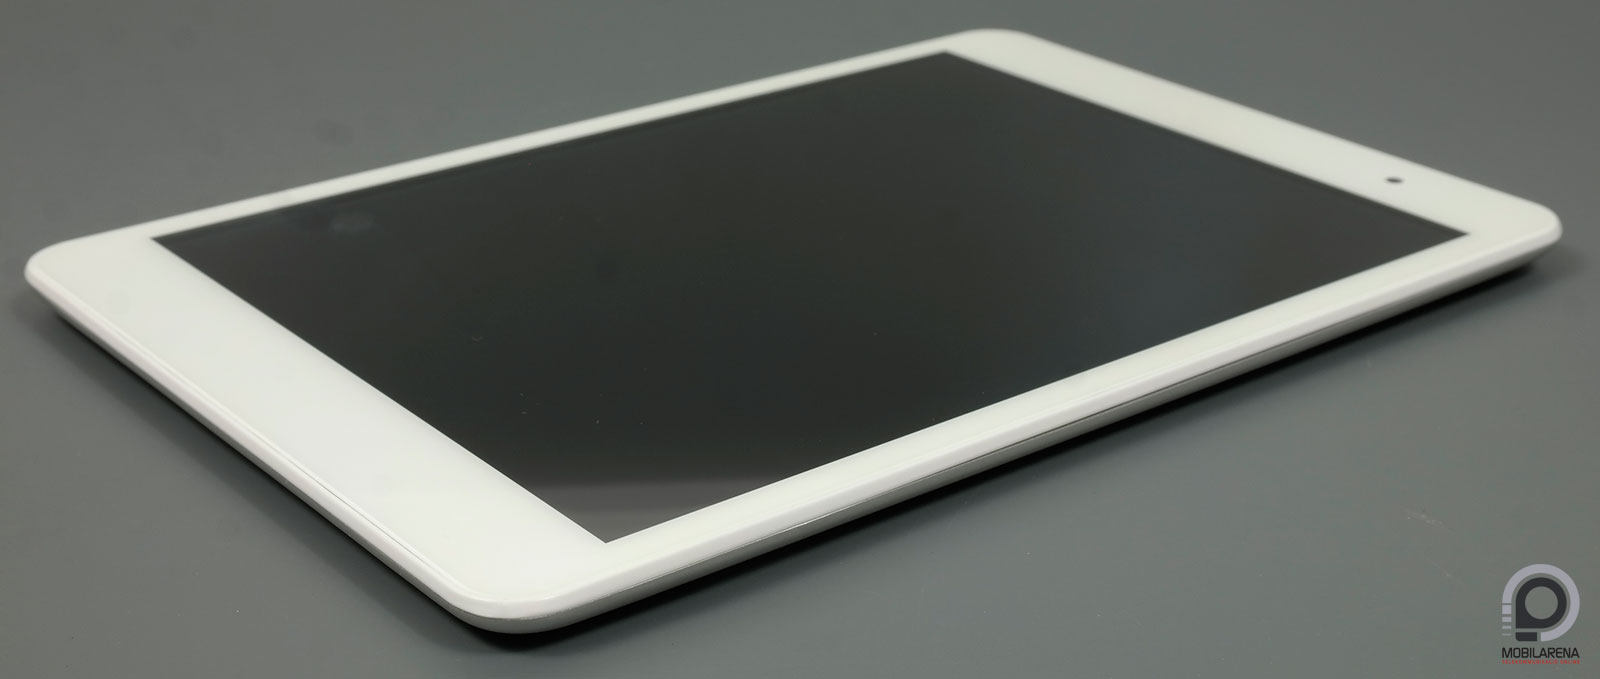 ConCorde Tab SLIM - karcsú hasonlóság - Mobilarena Tablet teszt